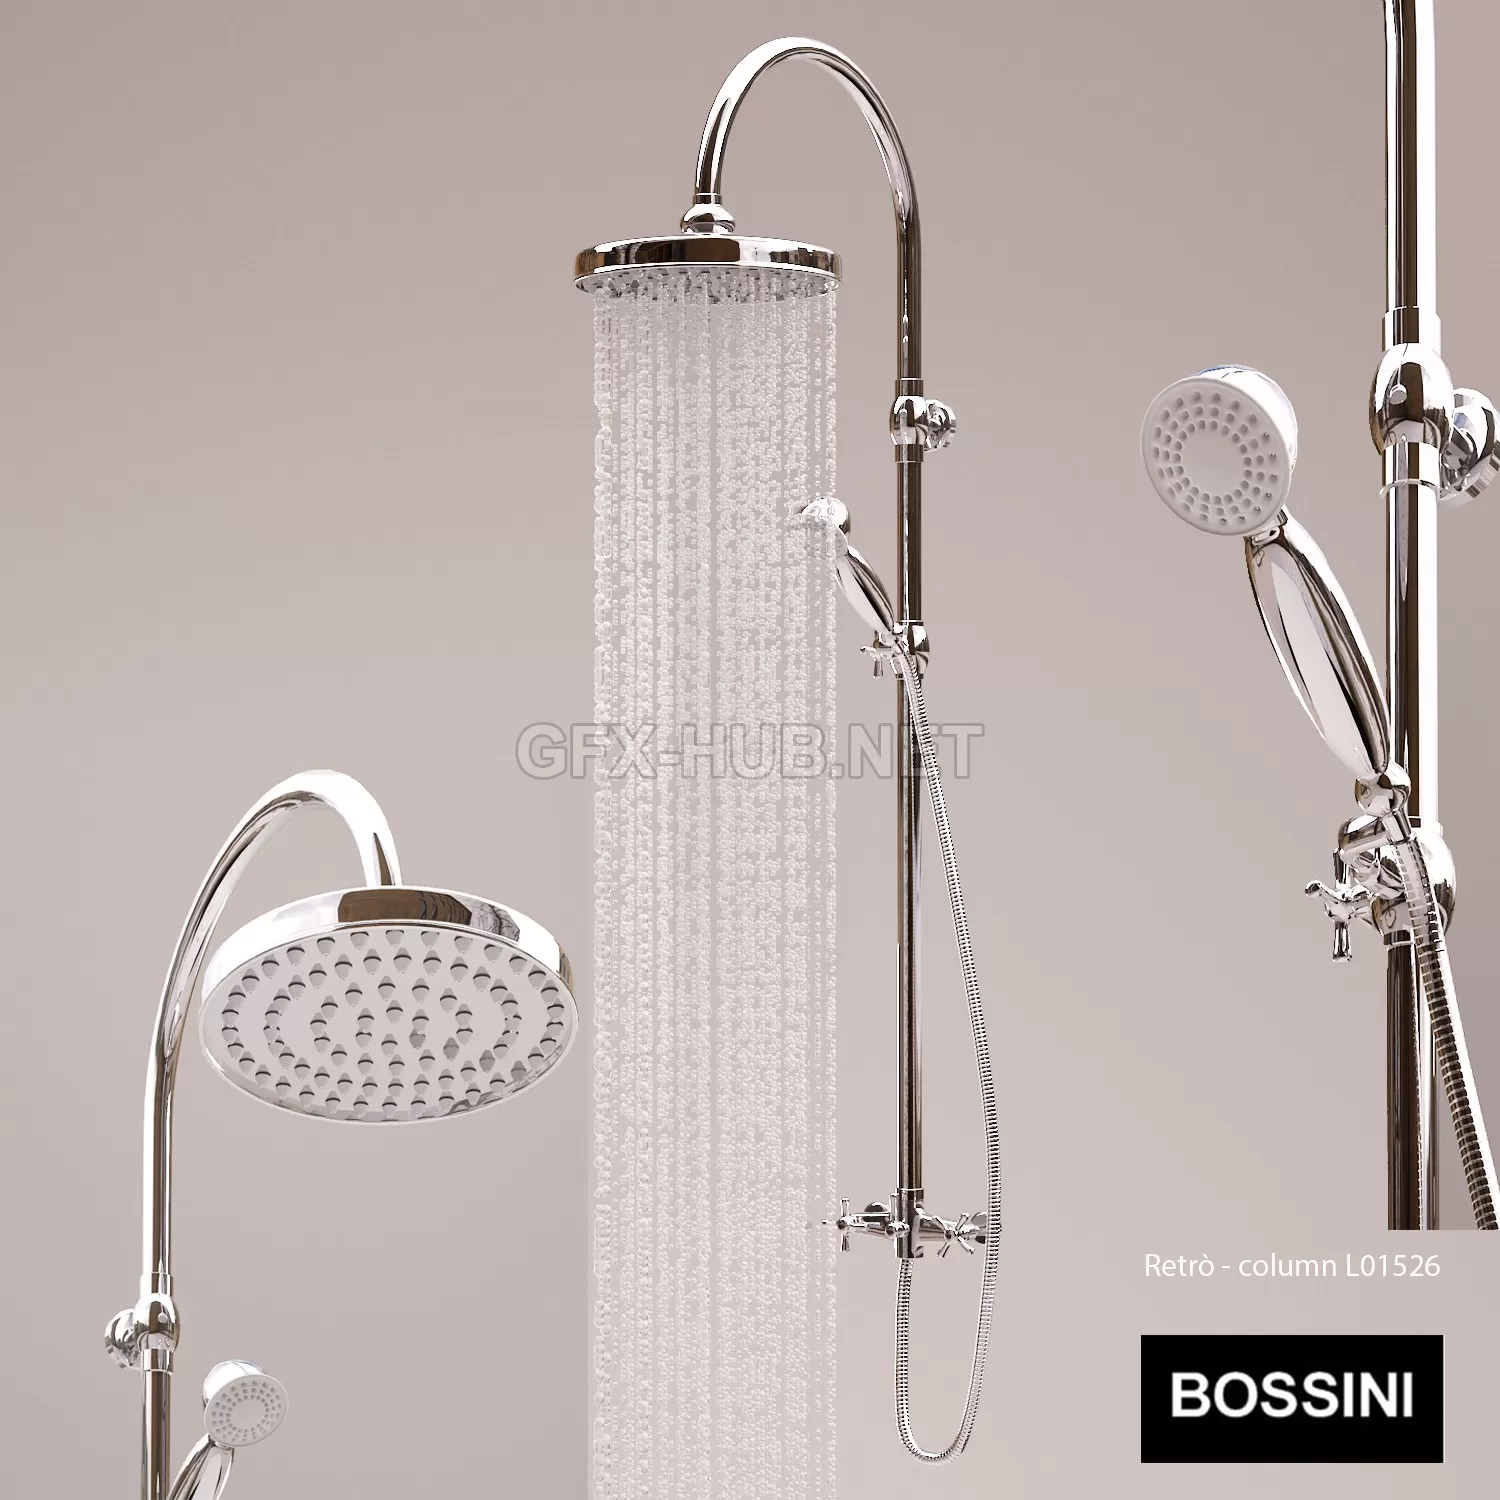 Showerhead Bossini Retro L01526 – 225091